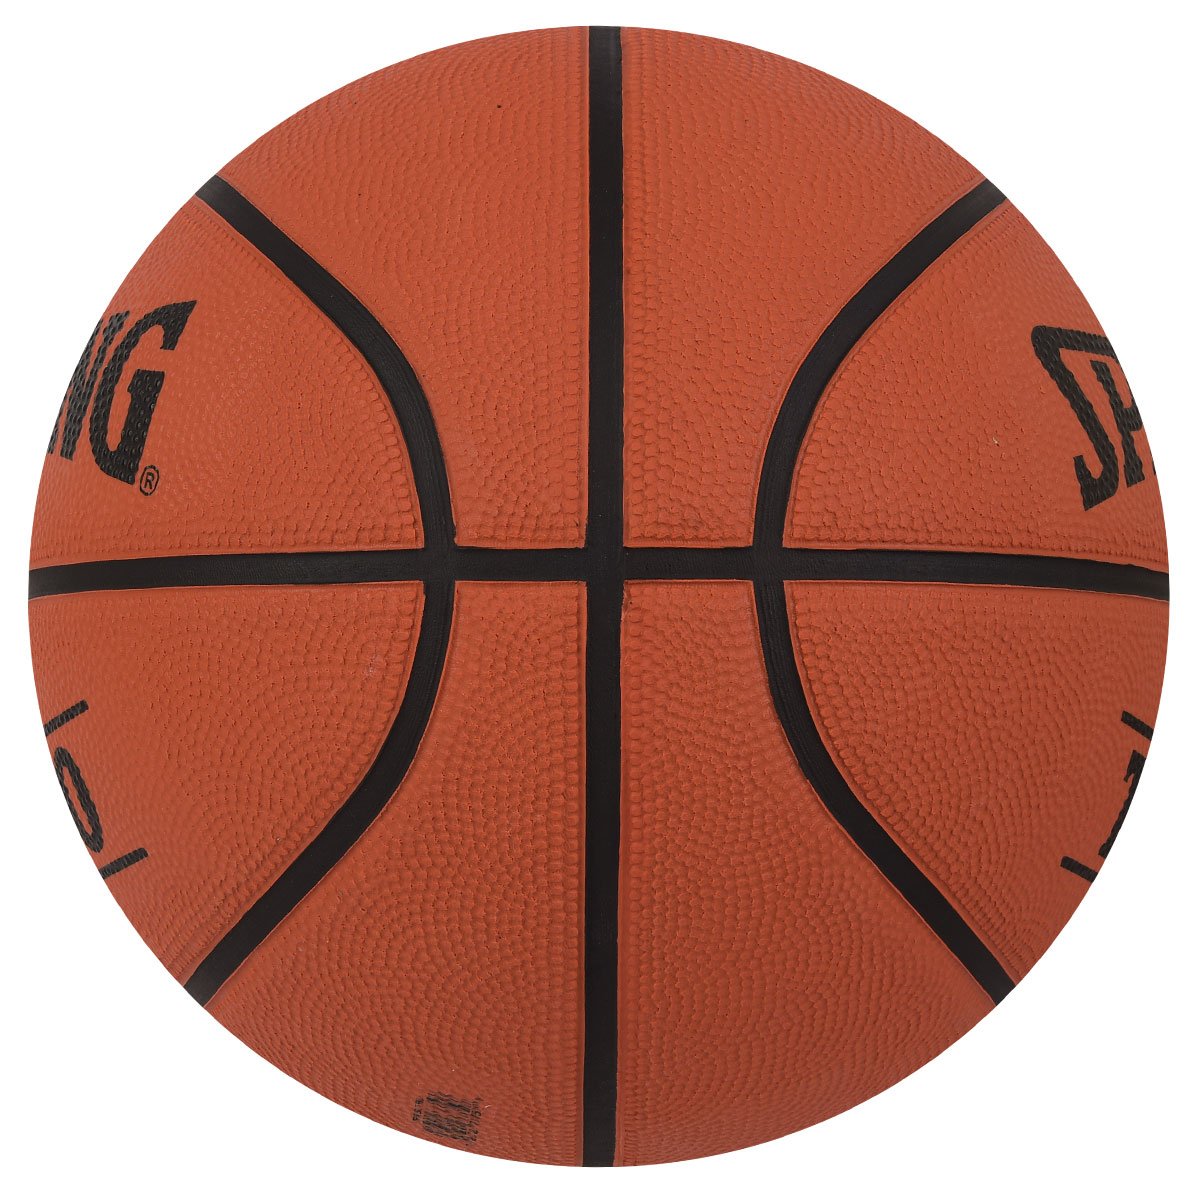 Spalding TF 50 Basketball, Size 7 - Best Price online Prokicksports.com